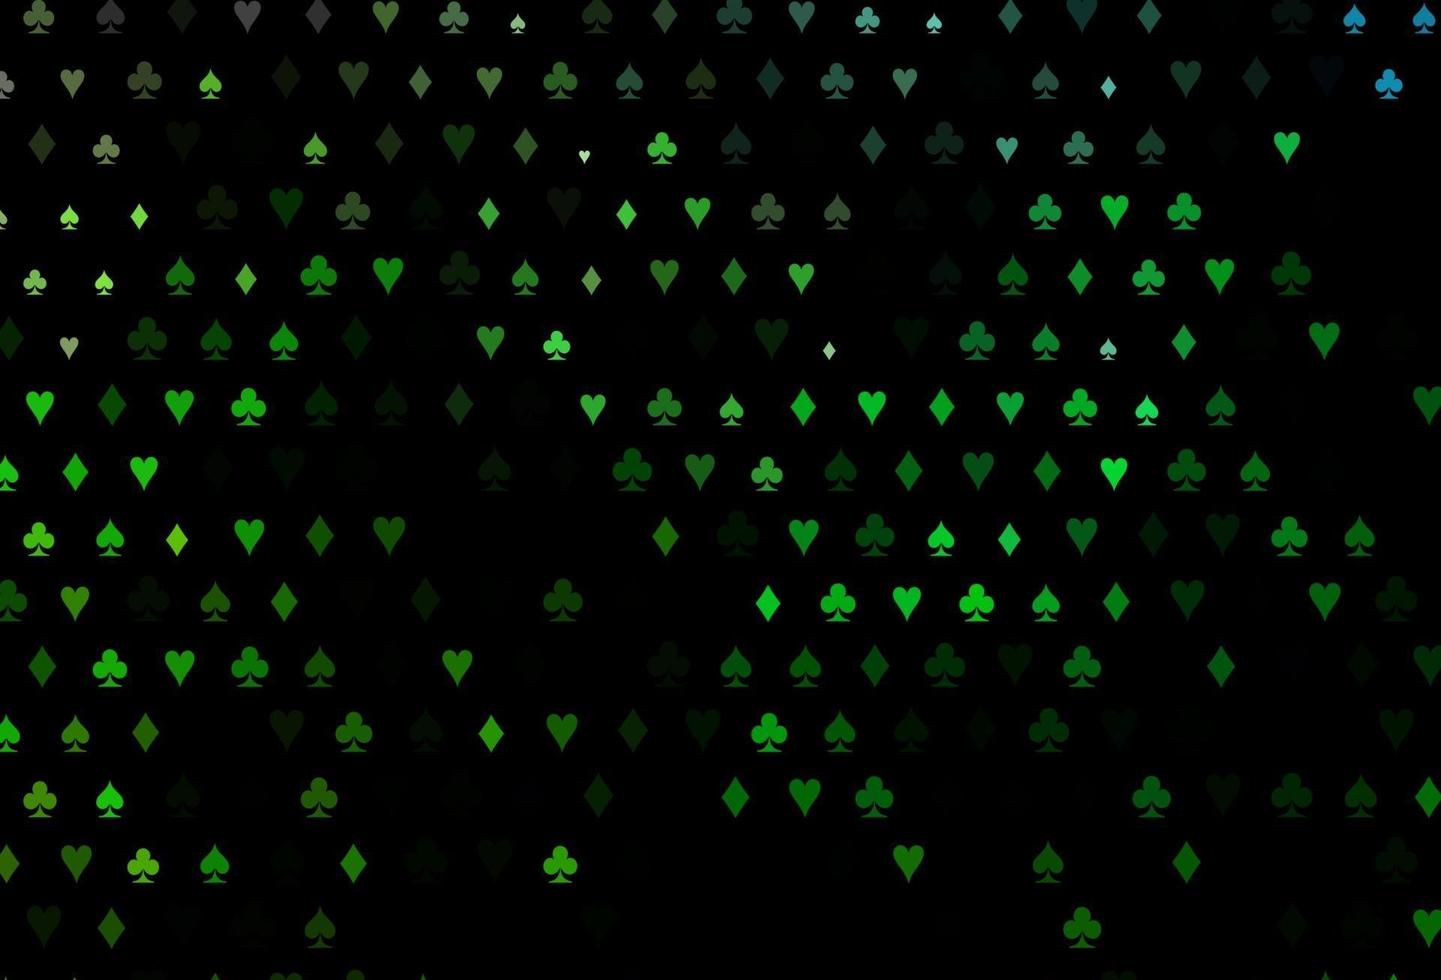 layout vettoriale verde scuro con elementi di carte.